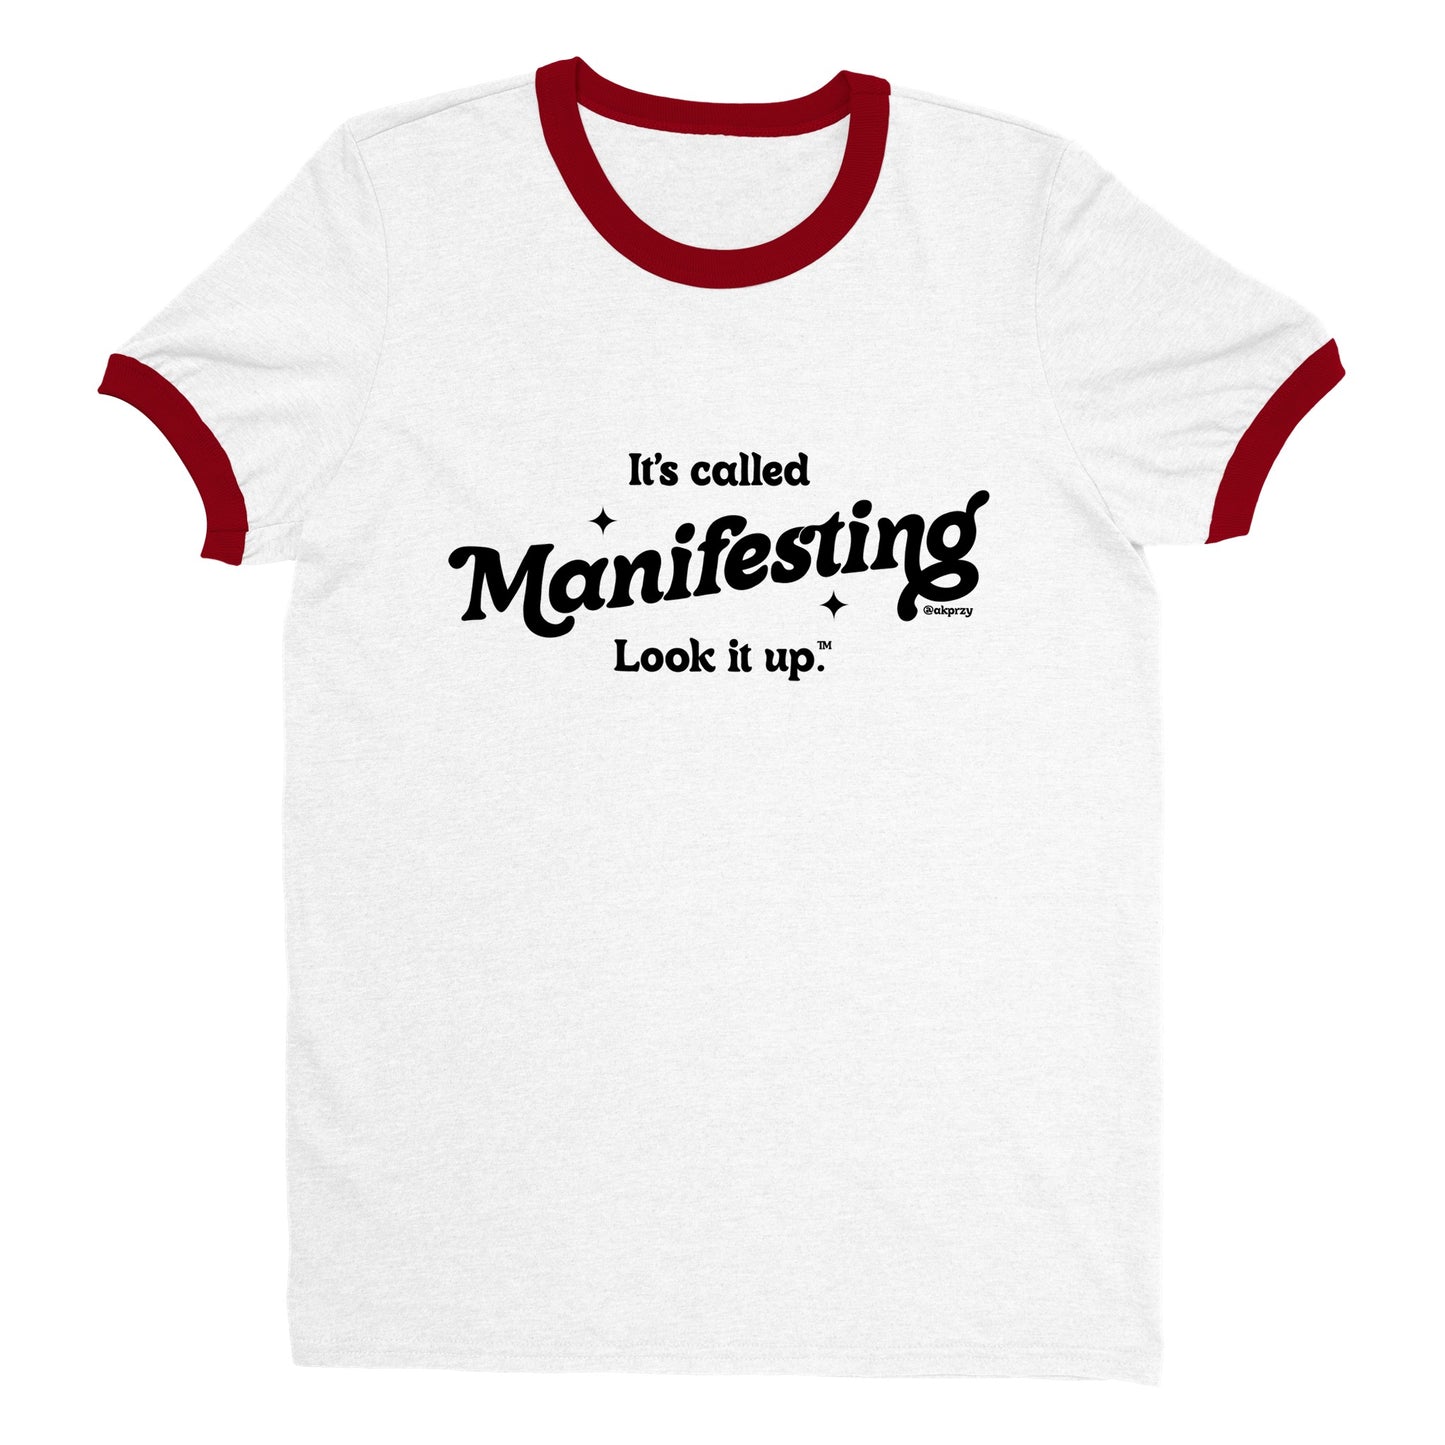 Unisex Ringer T-shirt - It's called manifesting